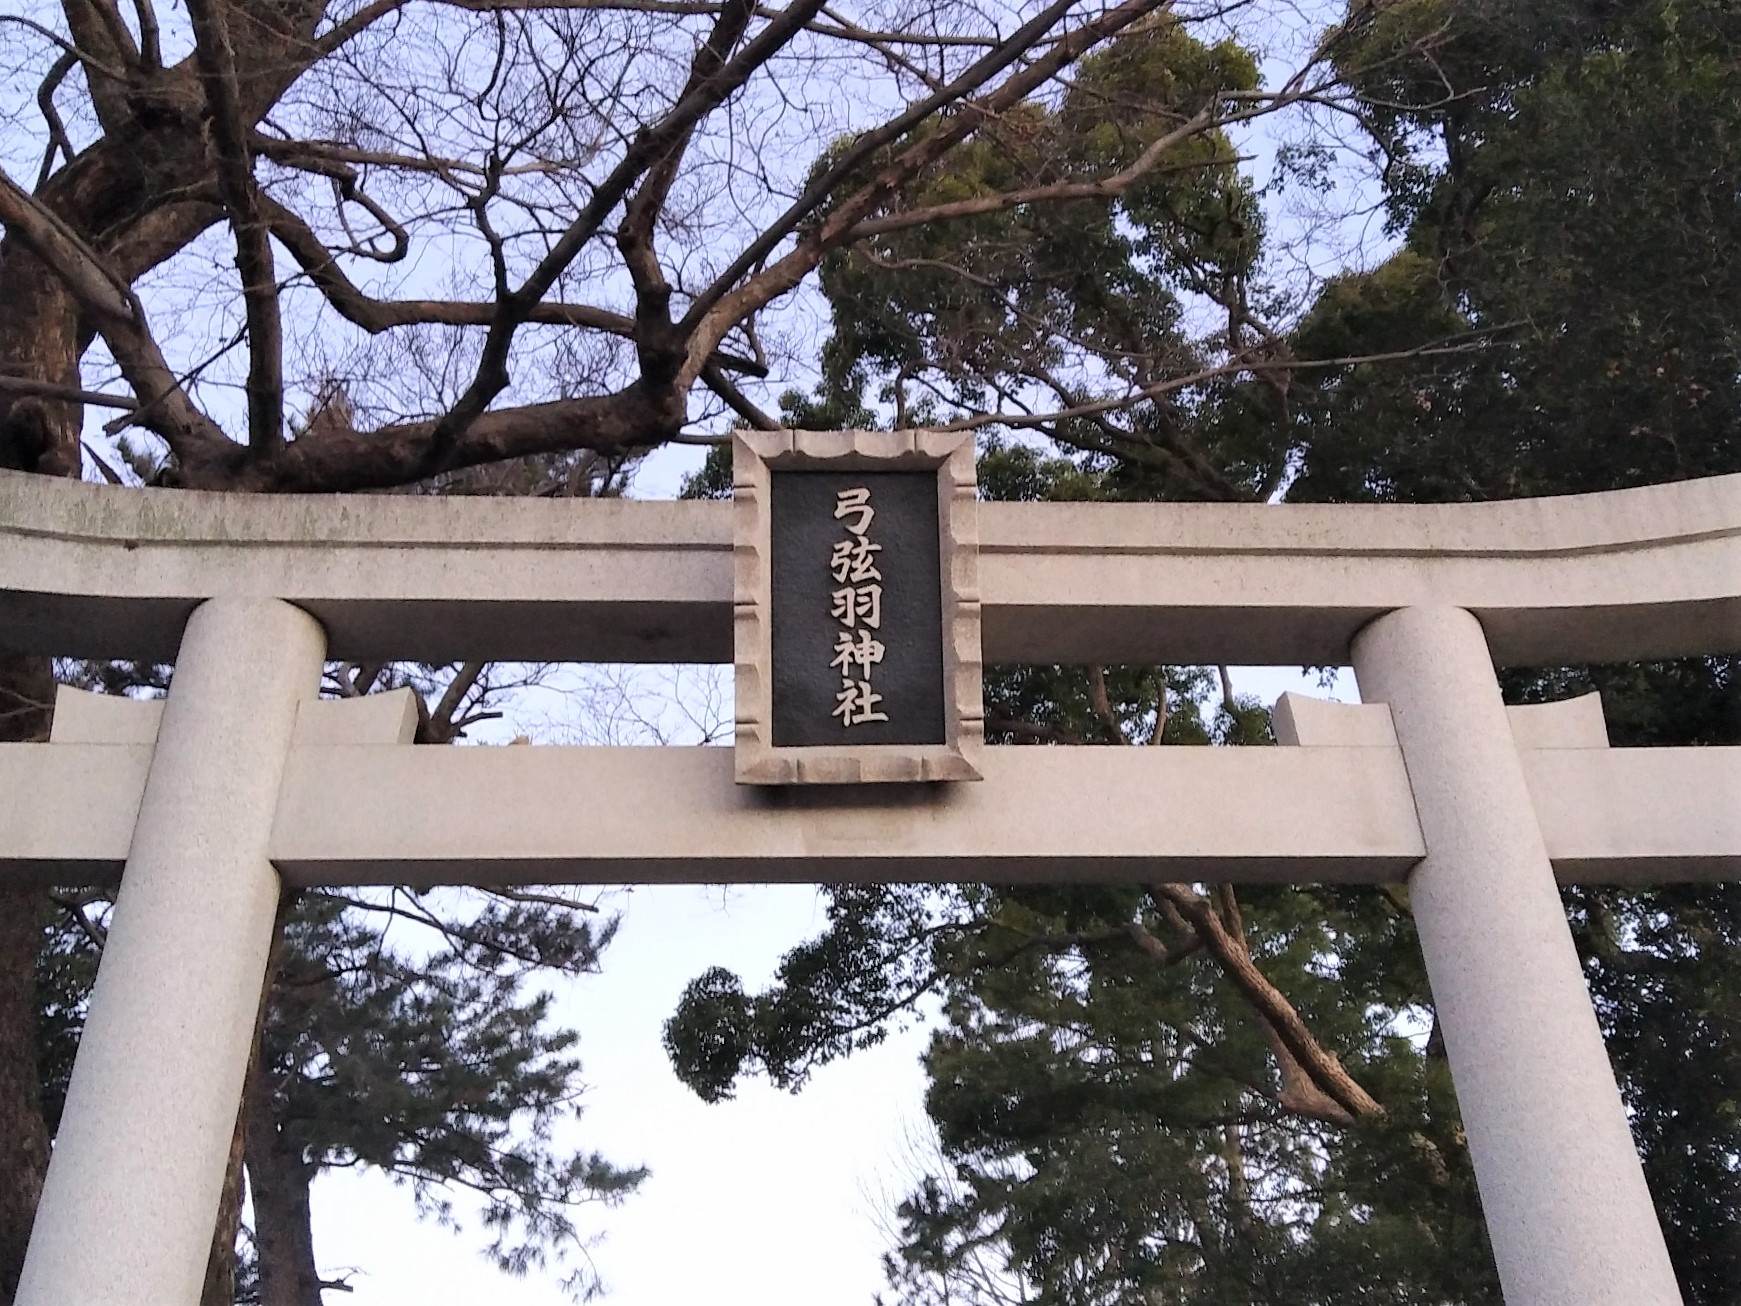 弓弦羽神社で七五三☆受付方法・所要時間のレビューをブログで紹介